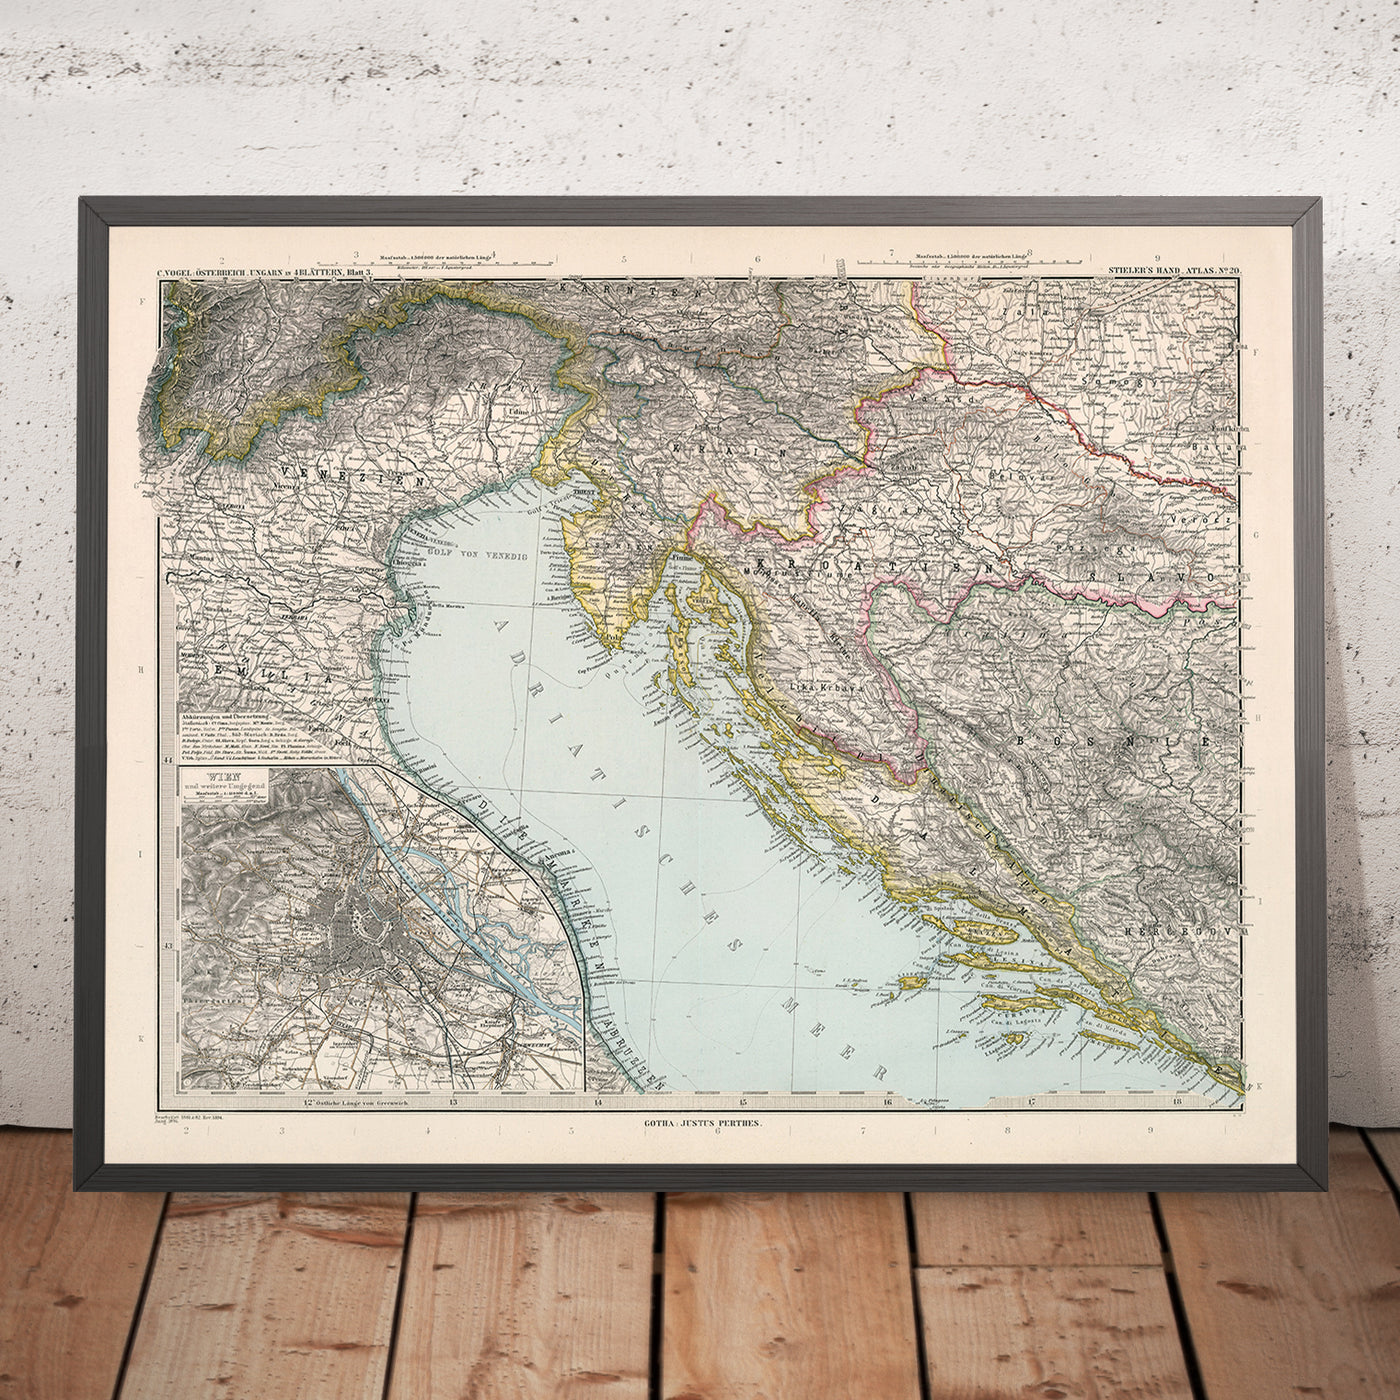 Ancienne carte de la Croatie et de la Bosnie par Adolf Stieler, 1894 : mer Adriatique, côte dalmate et montagnes Velebit